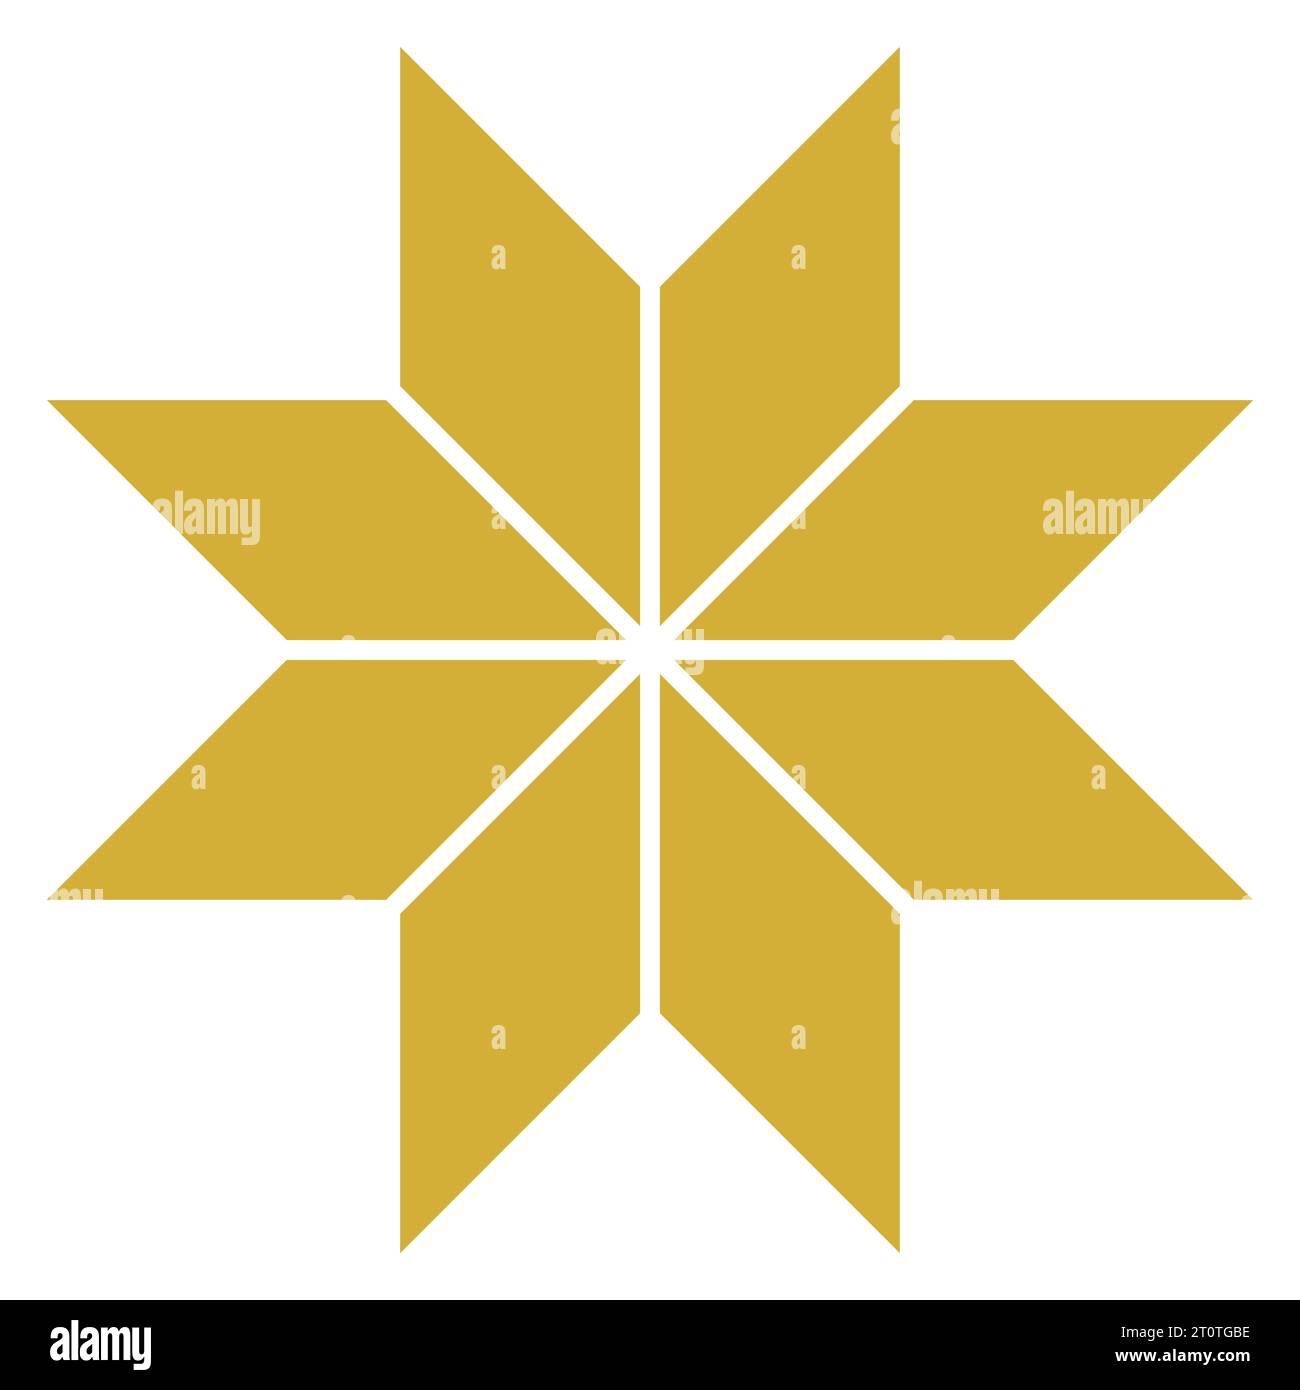 Eleganter Golden Star Vector: Diese skalierbare Vektorgrafik zeigt einen einfachen, aber fesselnden goldenen Stern, der eine einfache Anpassung und vielseitige Verwendung ermöglicht Stockfoto